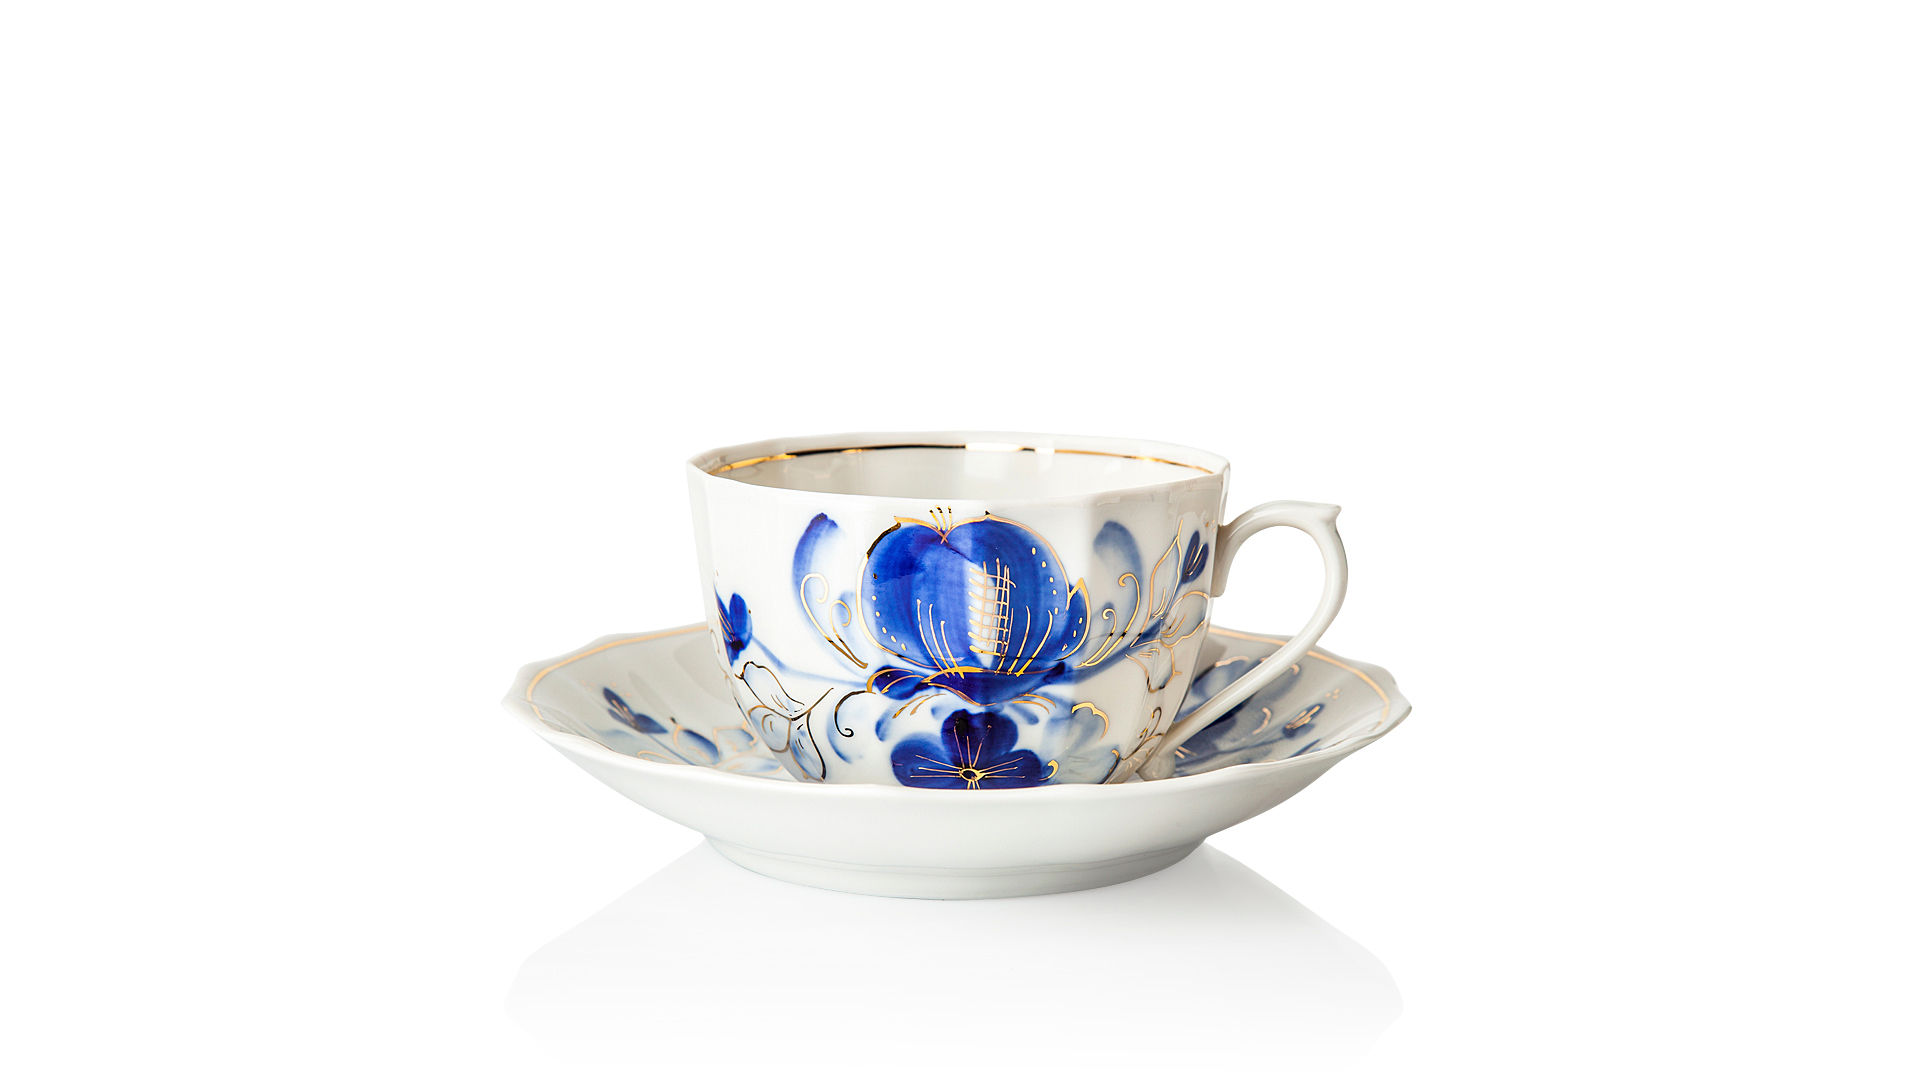 Чашка чайная с блюдцем Франц Гарднер в Вербилках Источник Голубая магнолия, фарфор твердый